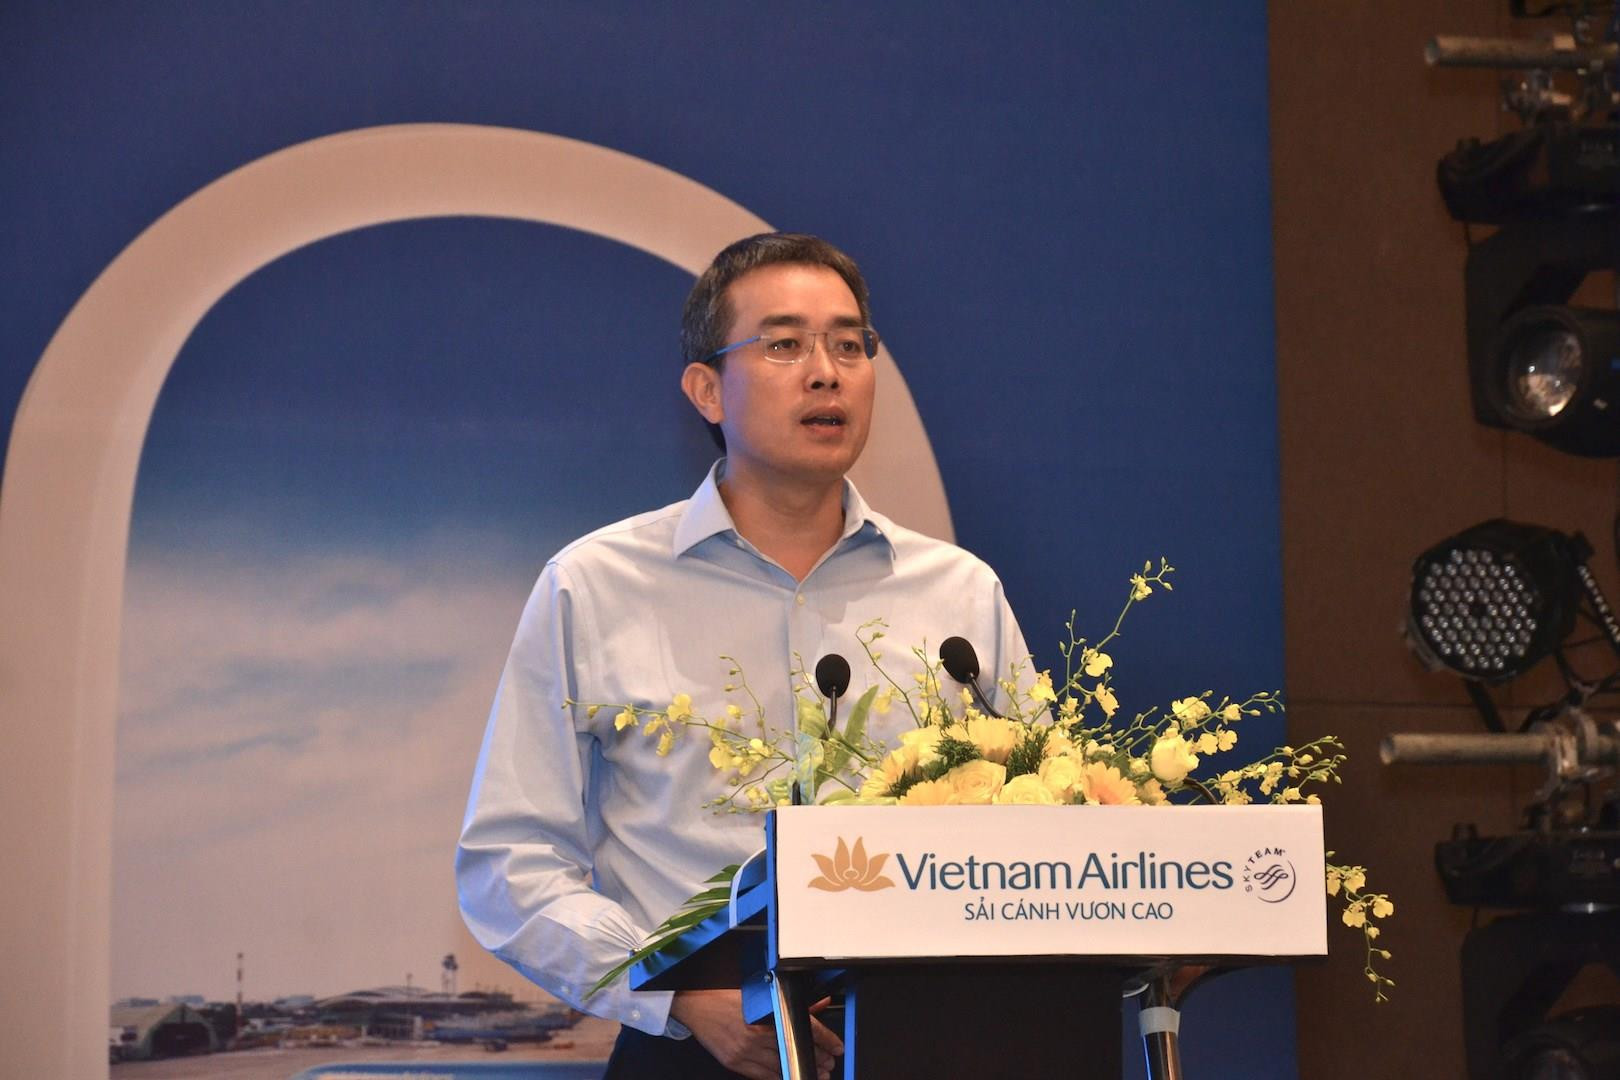 Chủ tịch Vietnam Airlines: Các hãng hàng không rất khó khăn - Ảnh 1.